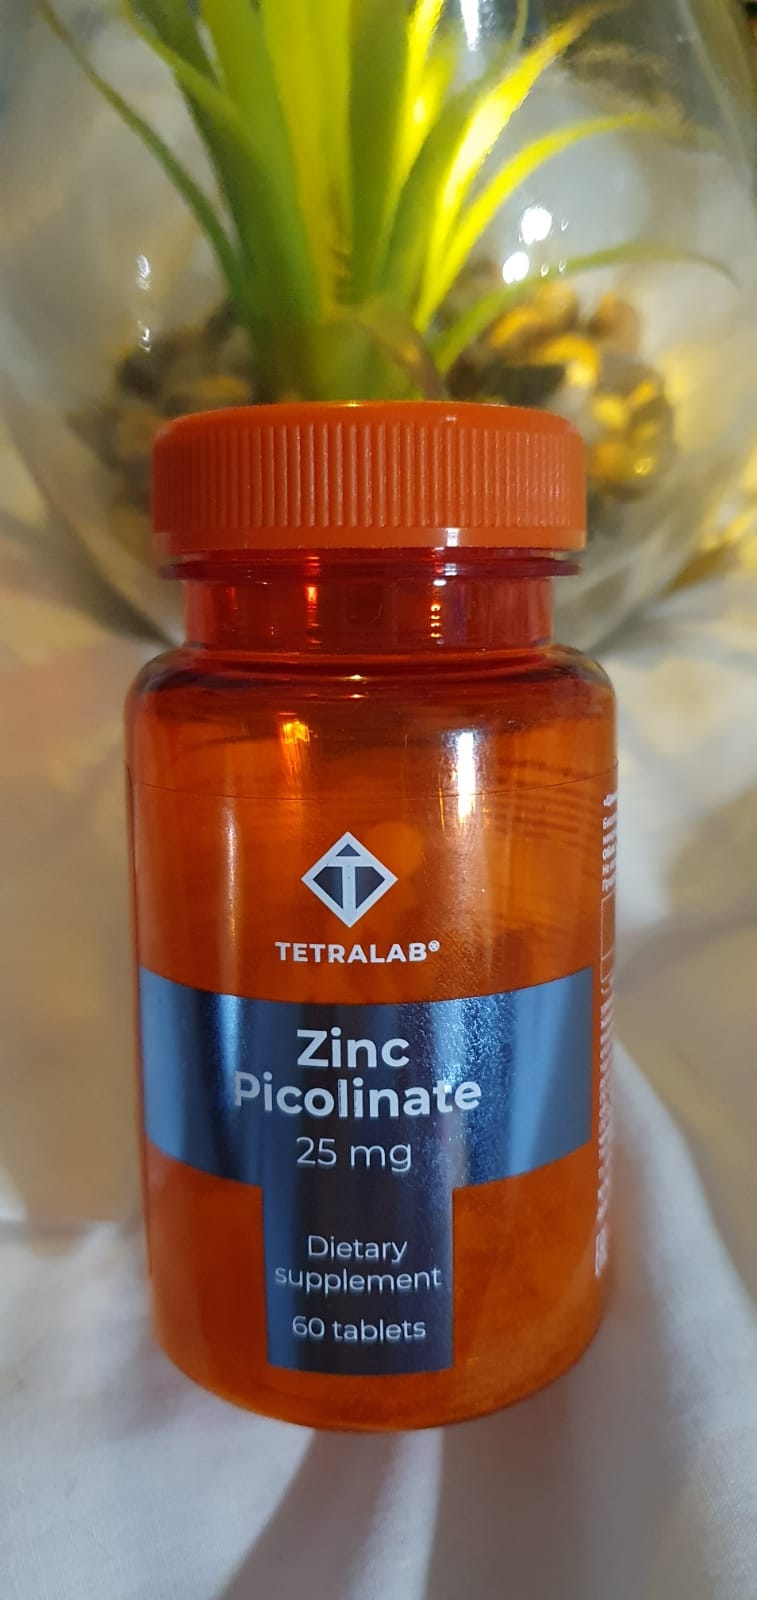 ТЕТРАЛАБ Пиколинат Цинка 25 мг № 60 - Недостаток цинка